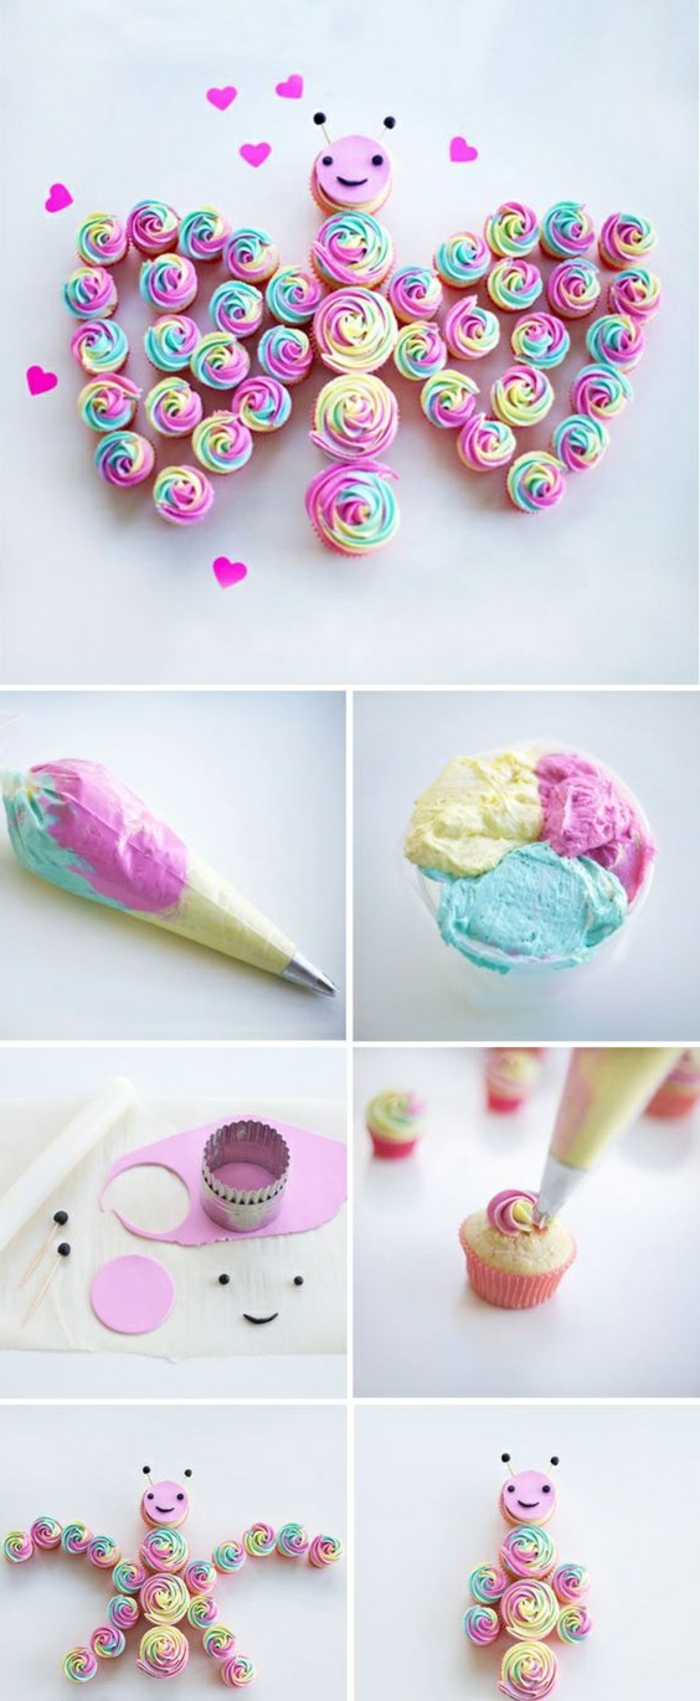 Cupcakes ukrasite s vrhnja različitih boja, leptir